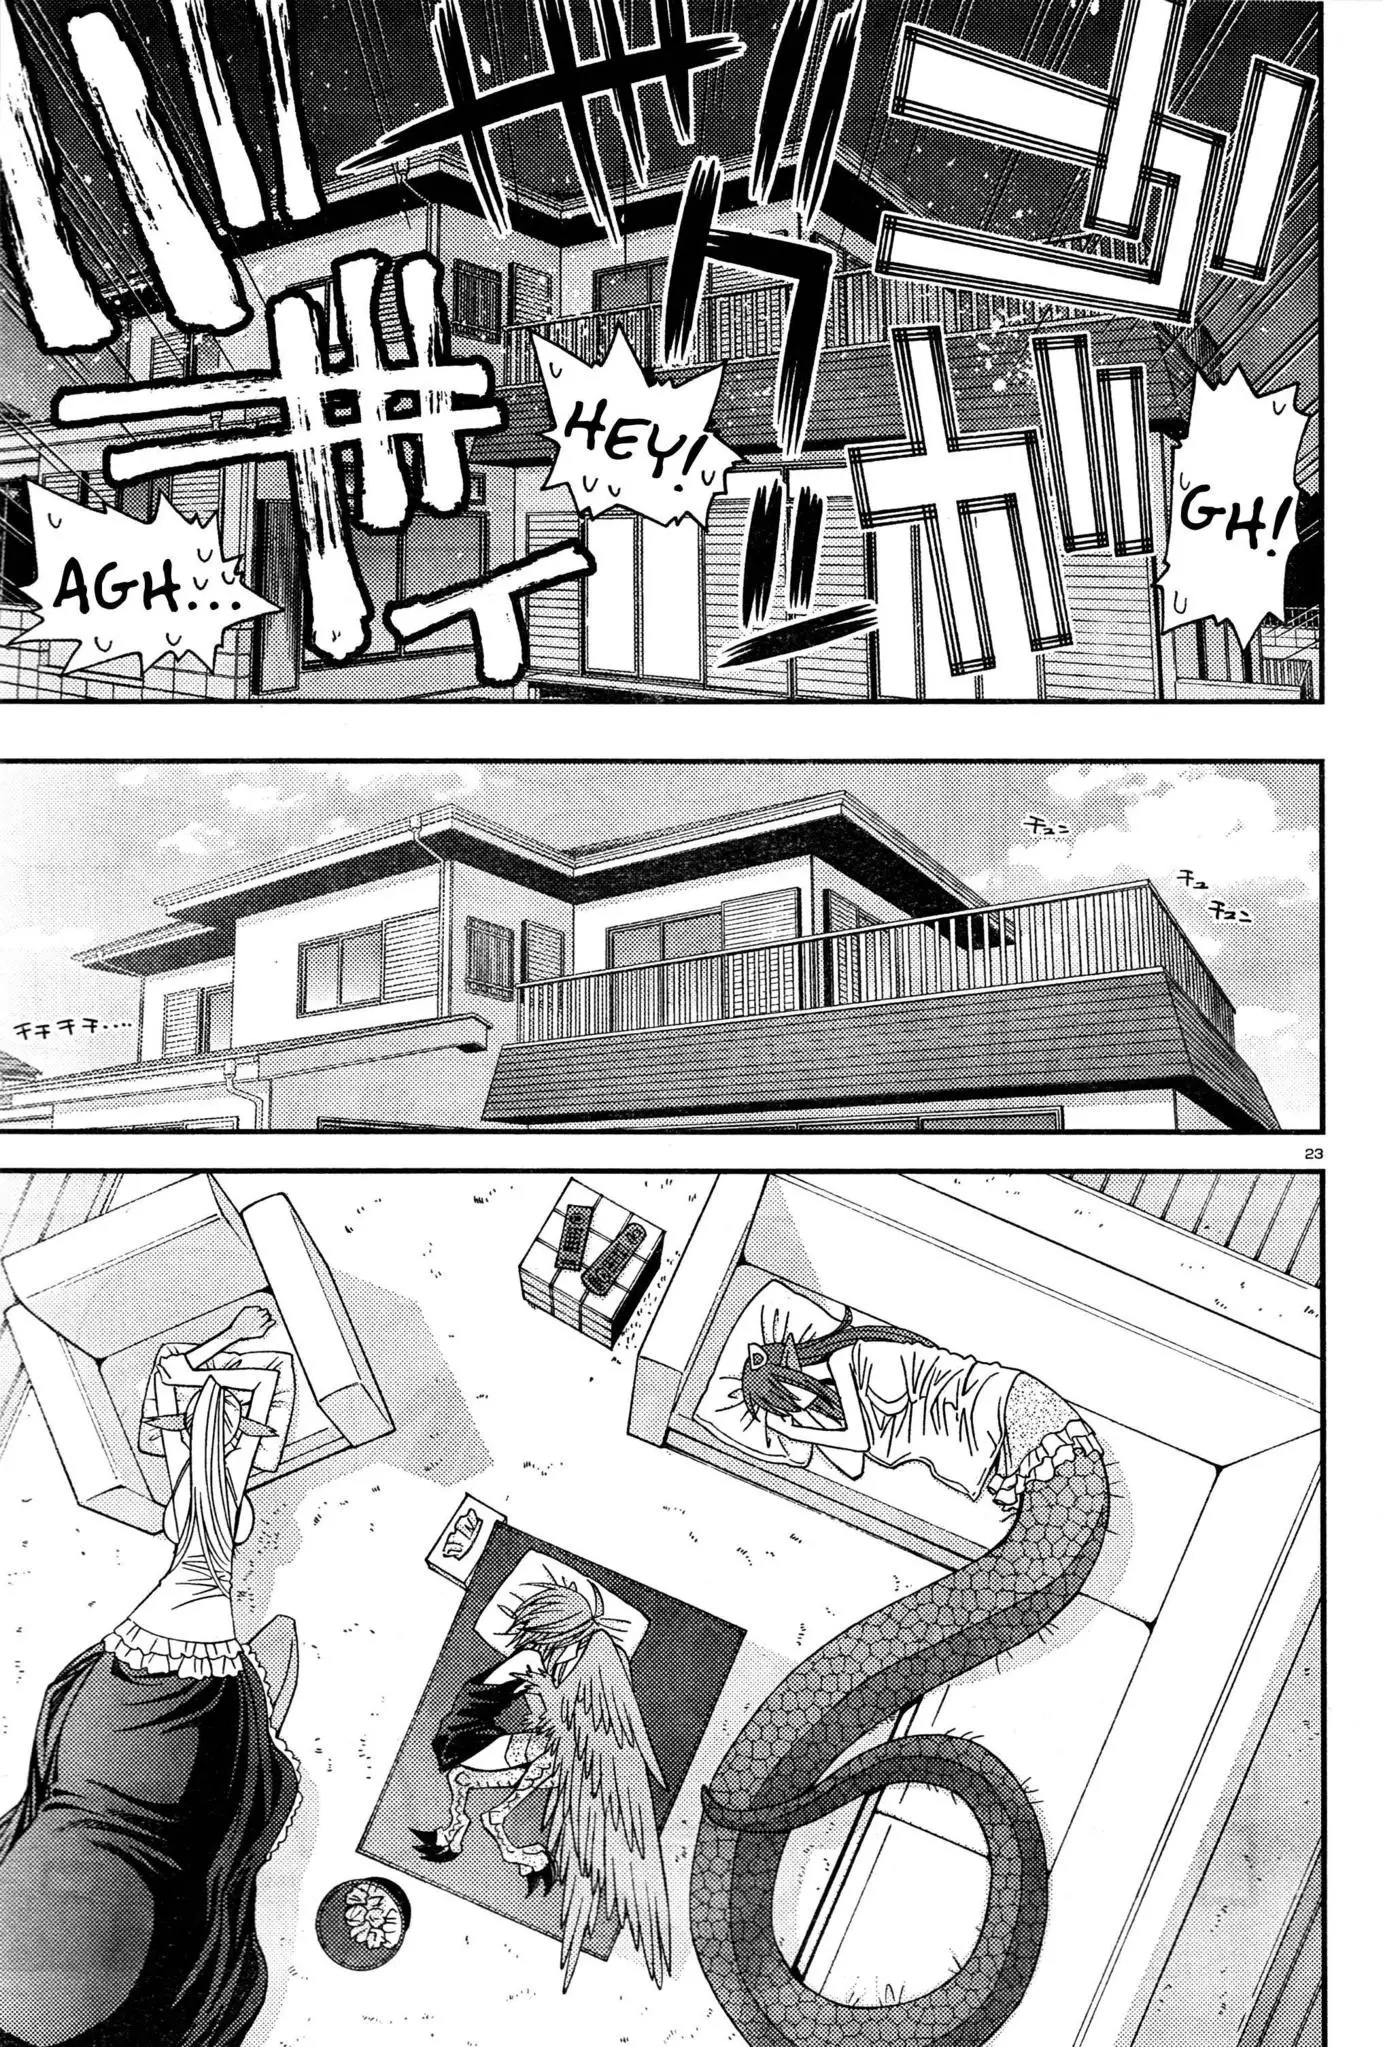 Monster Musume no Iru Nichijou - 6 page p_00027